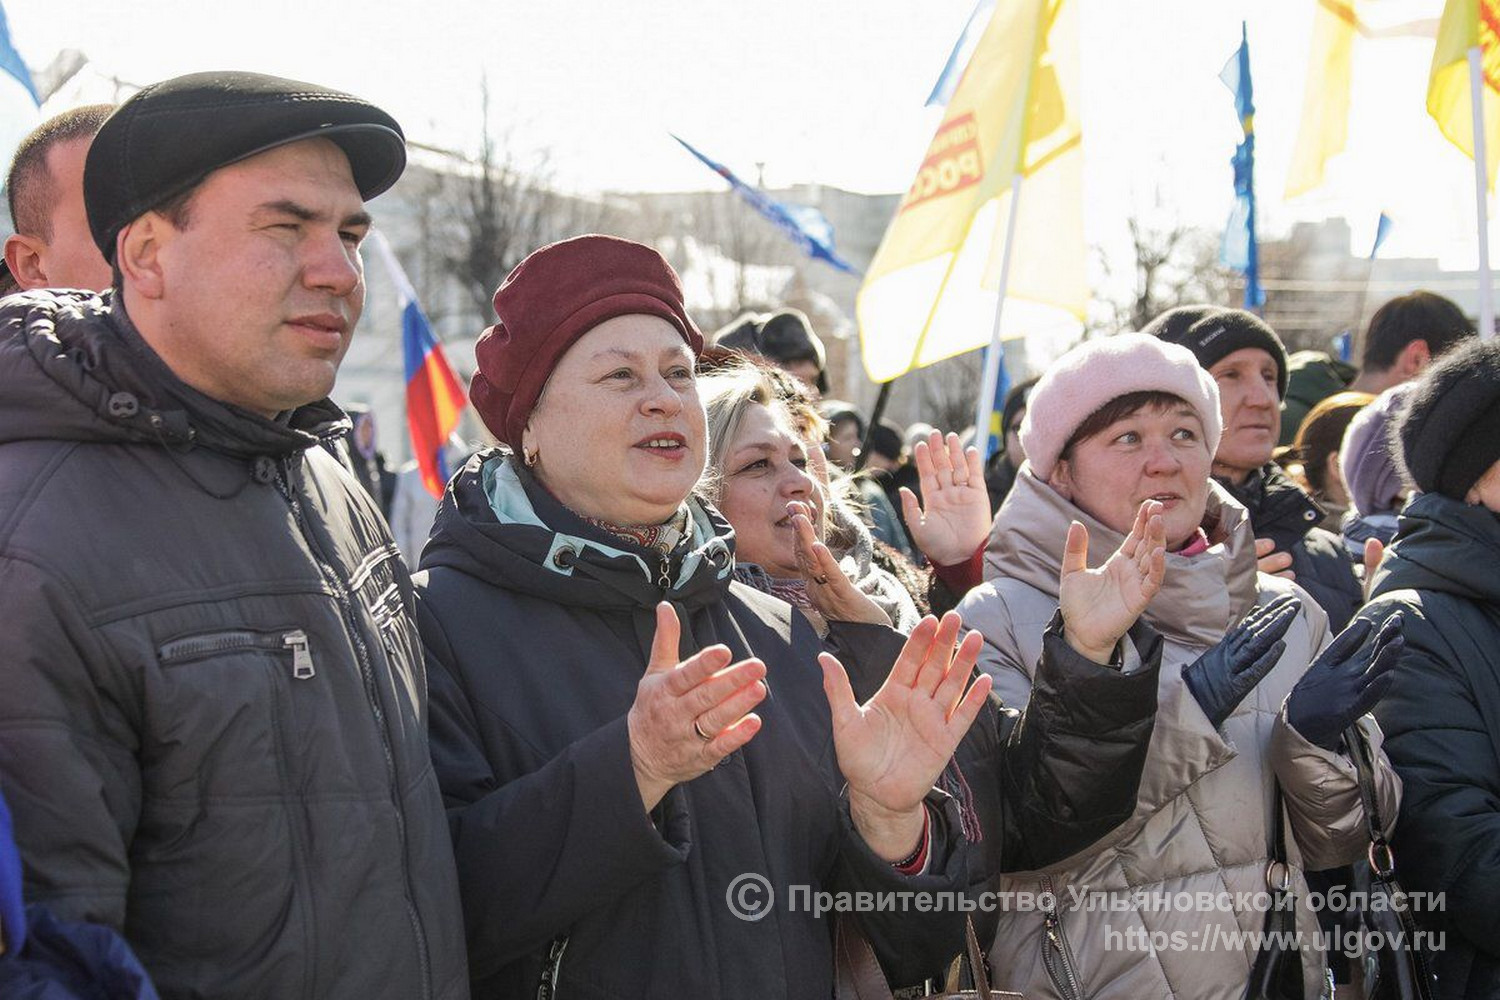 Сайт ульяновск сегодня. Митинг в Ульяновске сегодня. Собрание на Соборной площади. Фото митинга в Ульяновске.